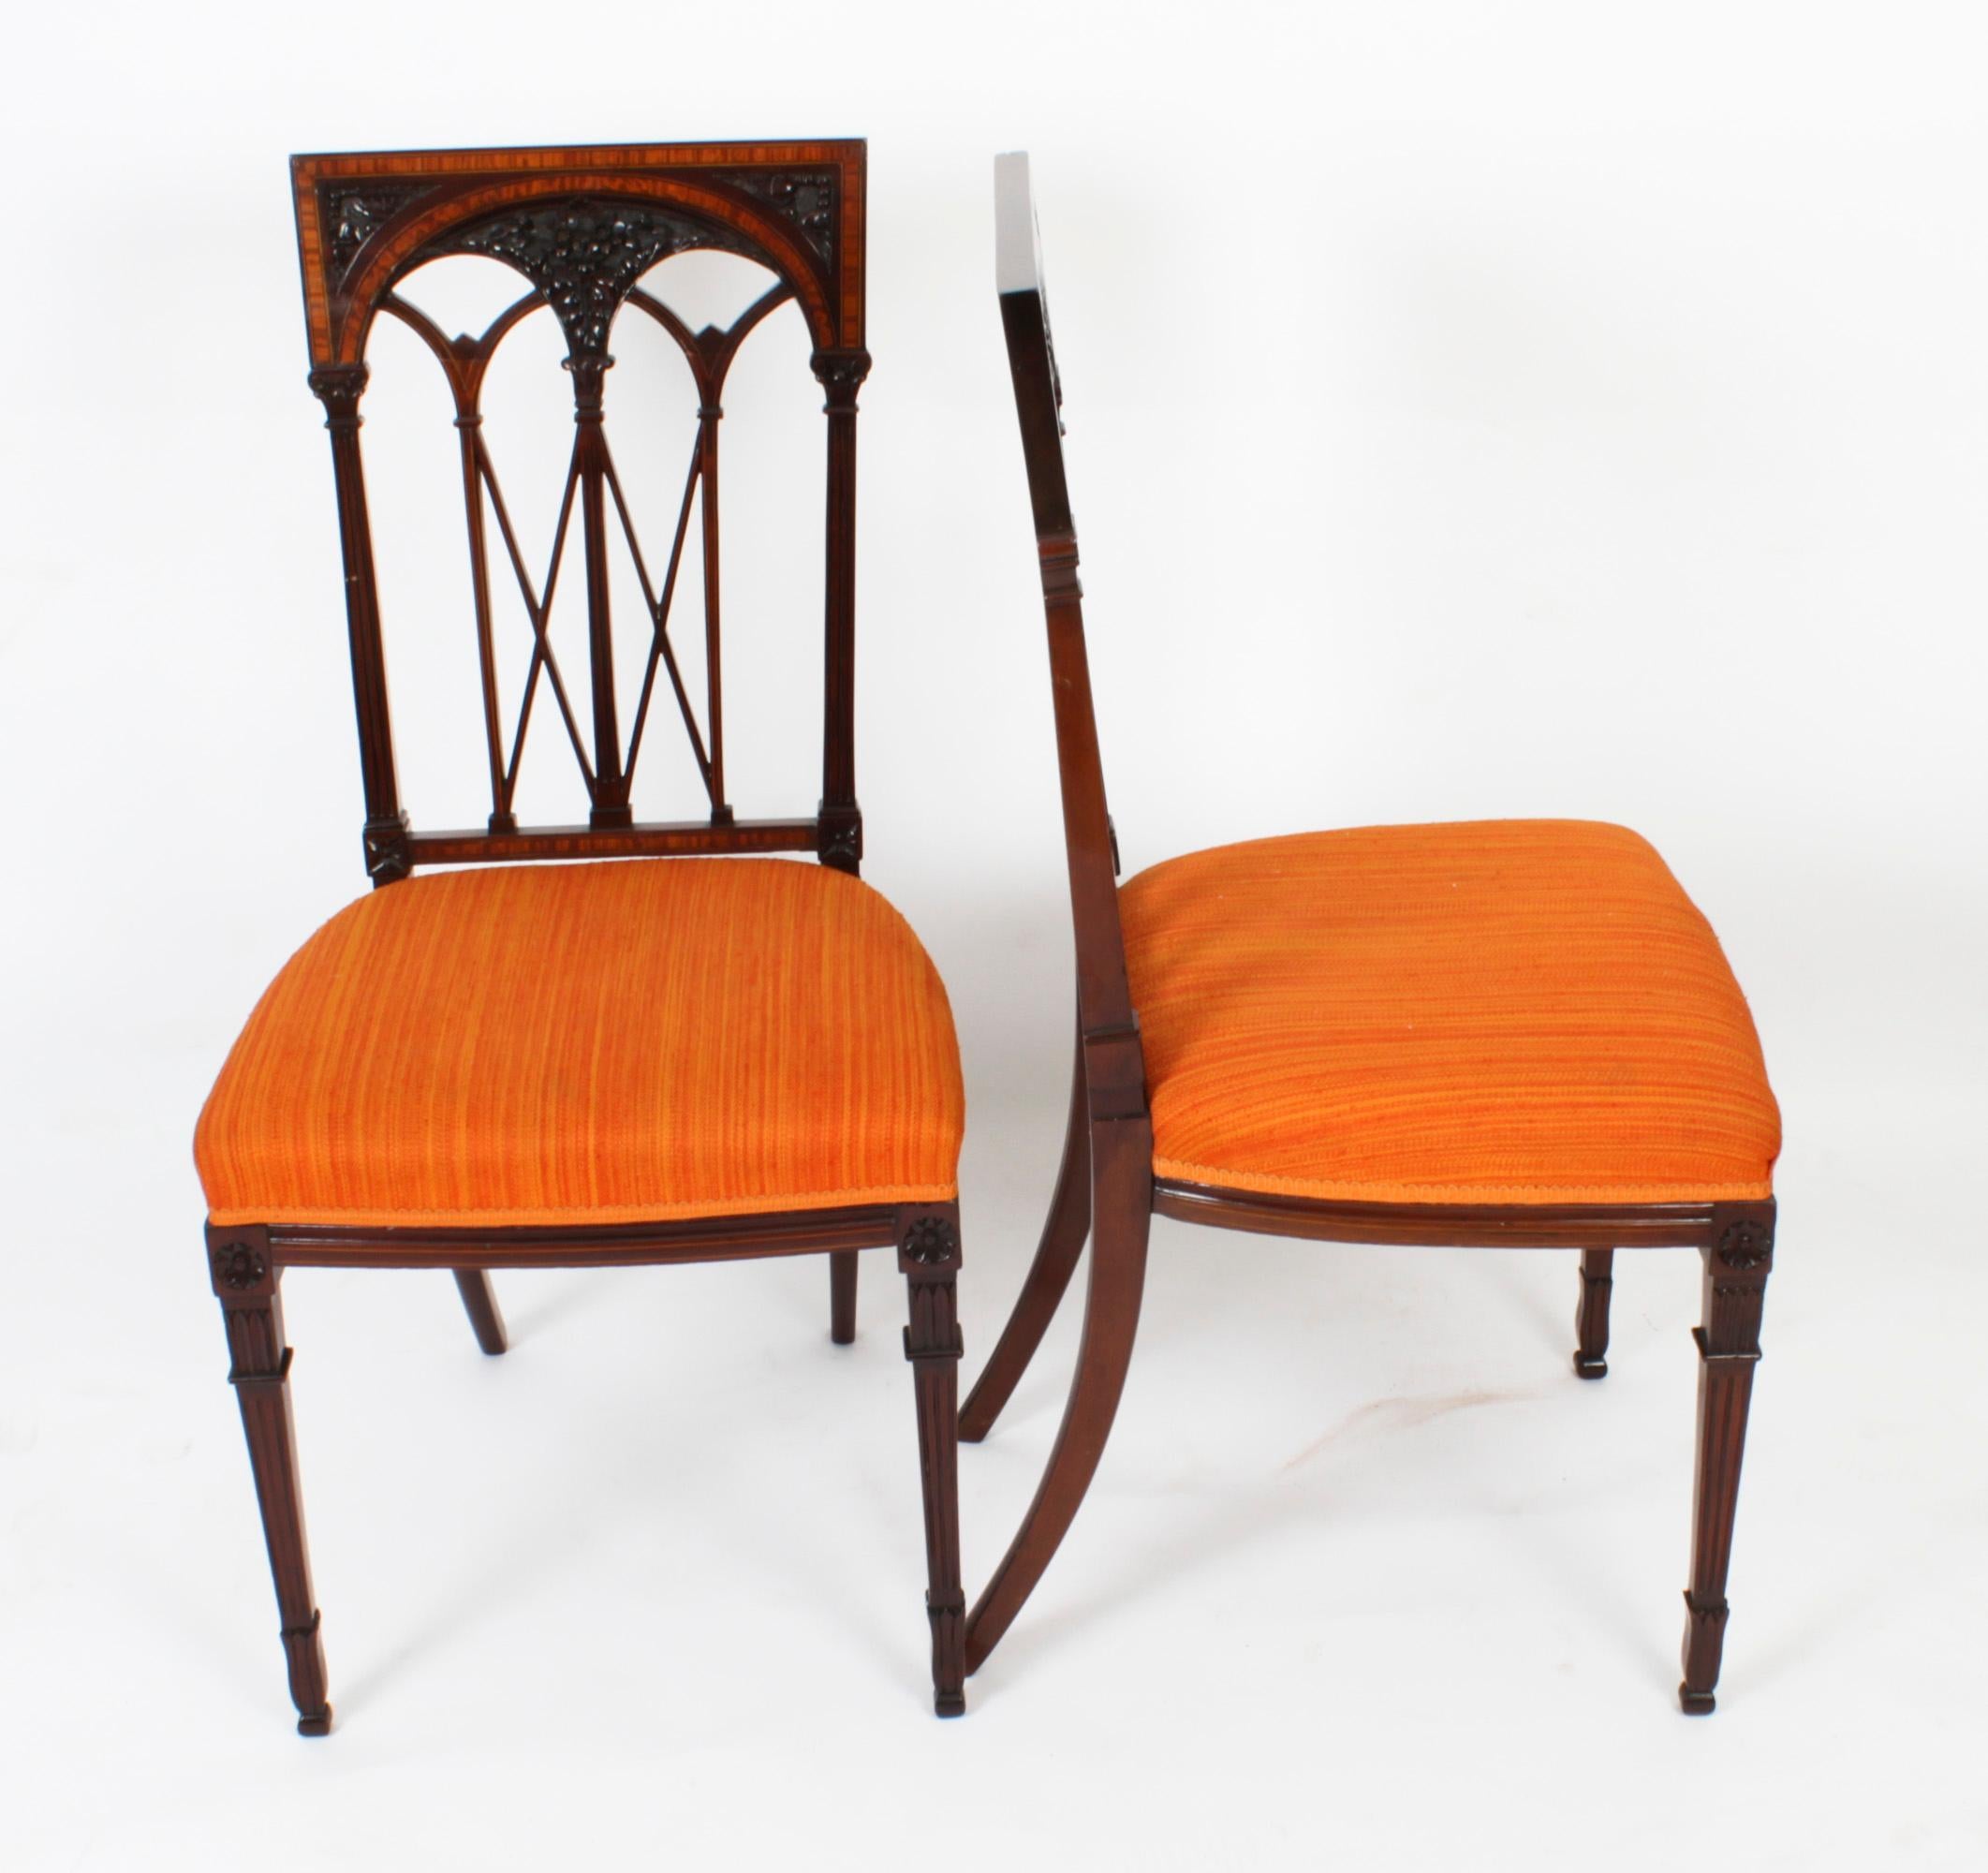 Ein hervorragendes und auffälliges Paar Stühle aus Mahagoni und Satinholz im Sheraton-Stil, datiert um 1900.

Die Stühle mit hoher Rückenlehne sind mit Satinholzbändern mit Buchsbaum- und Ebenholzintarsien sowie einer wunderschönen blattgeschnitzten